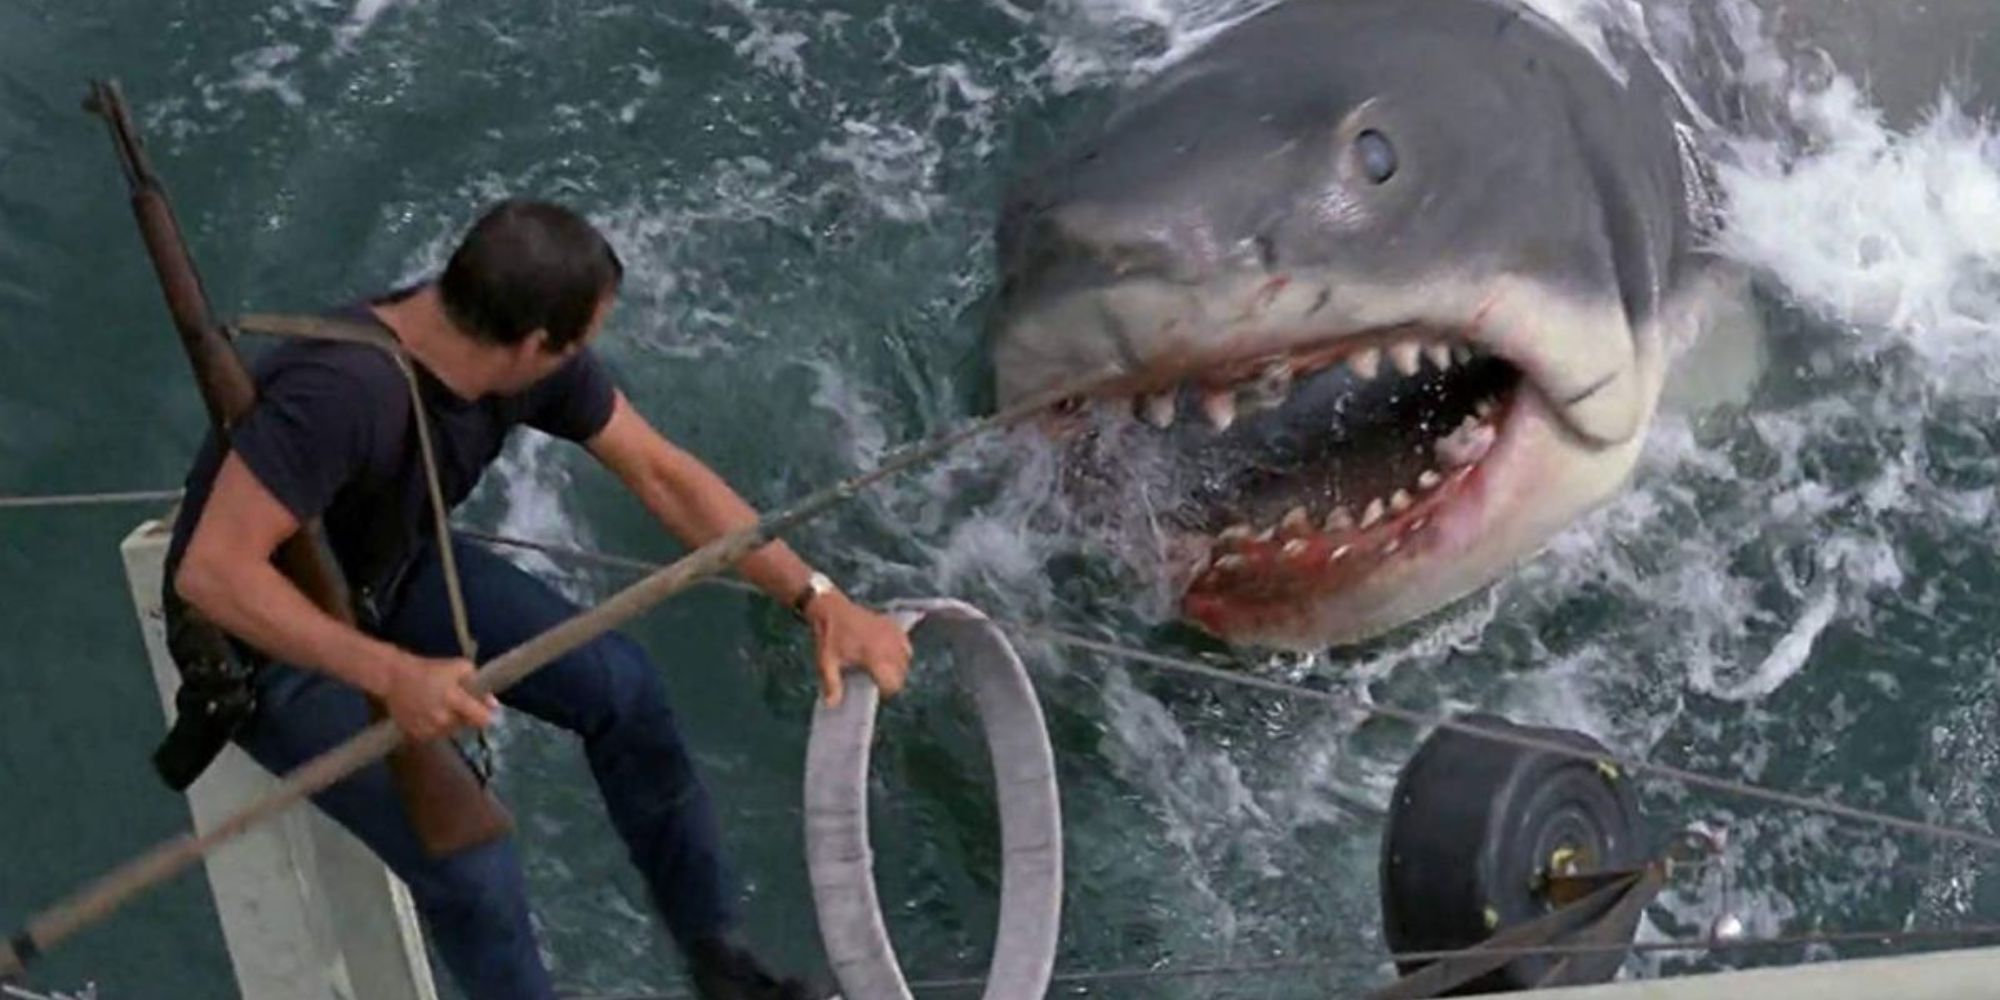 A man battling a great white shark